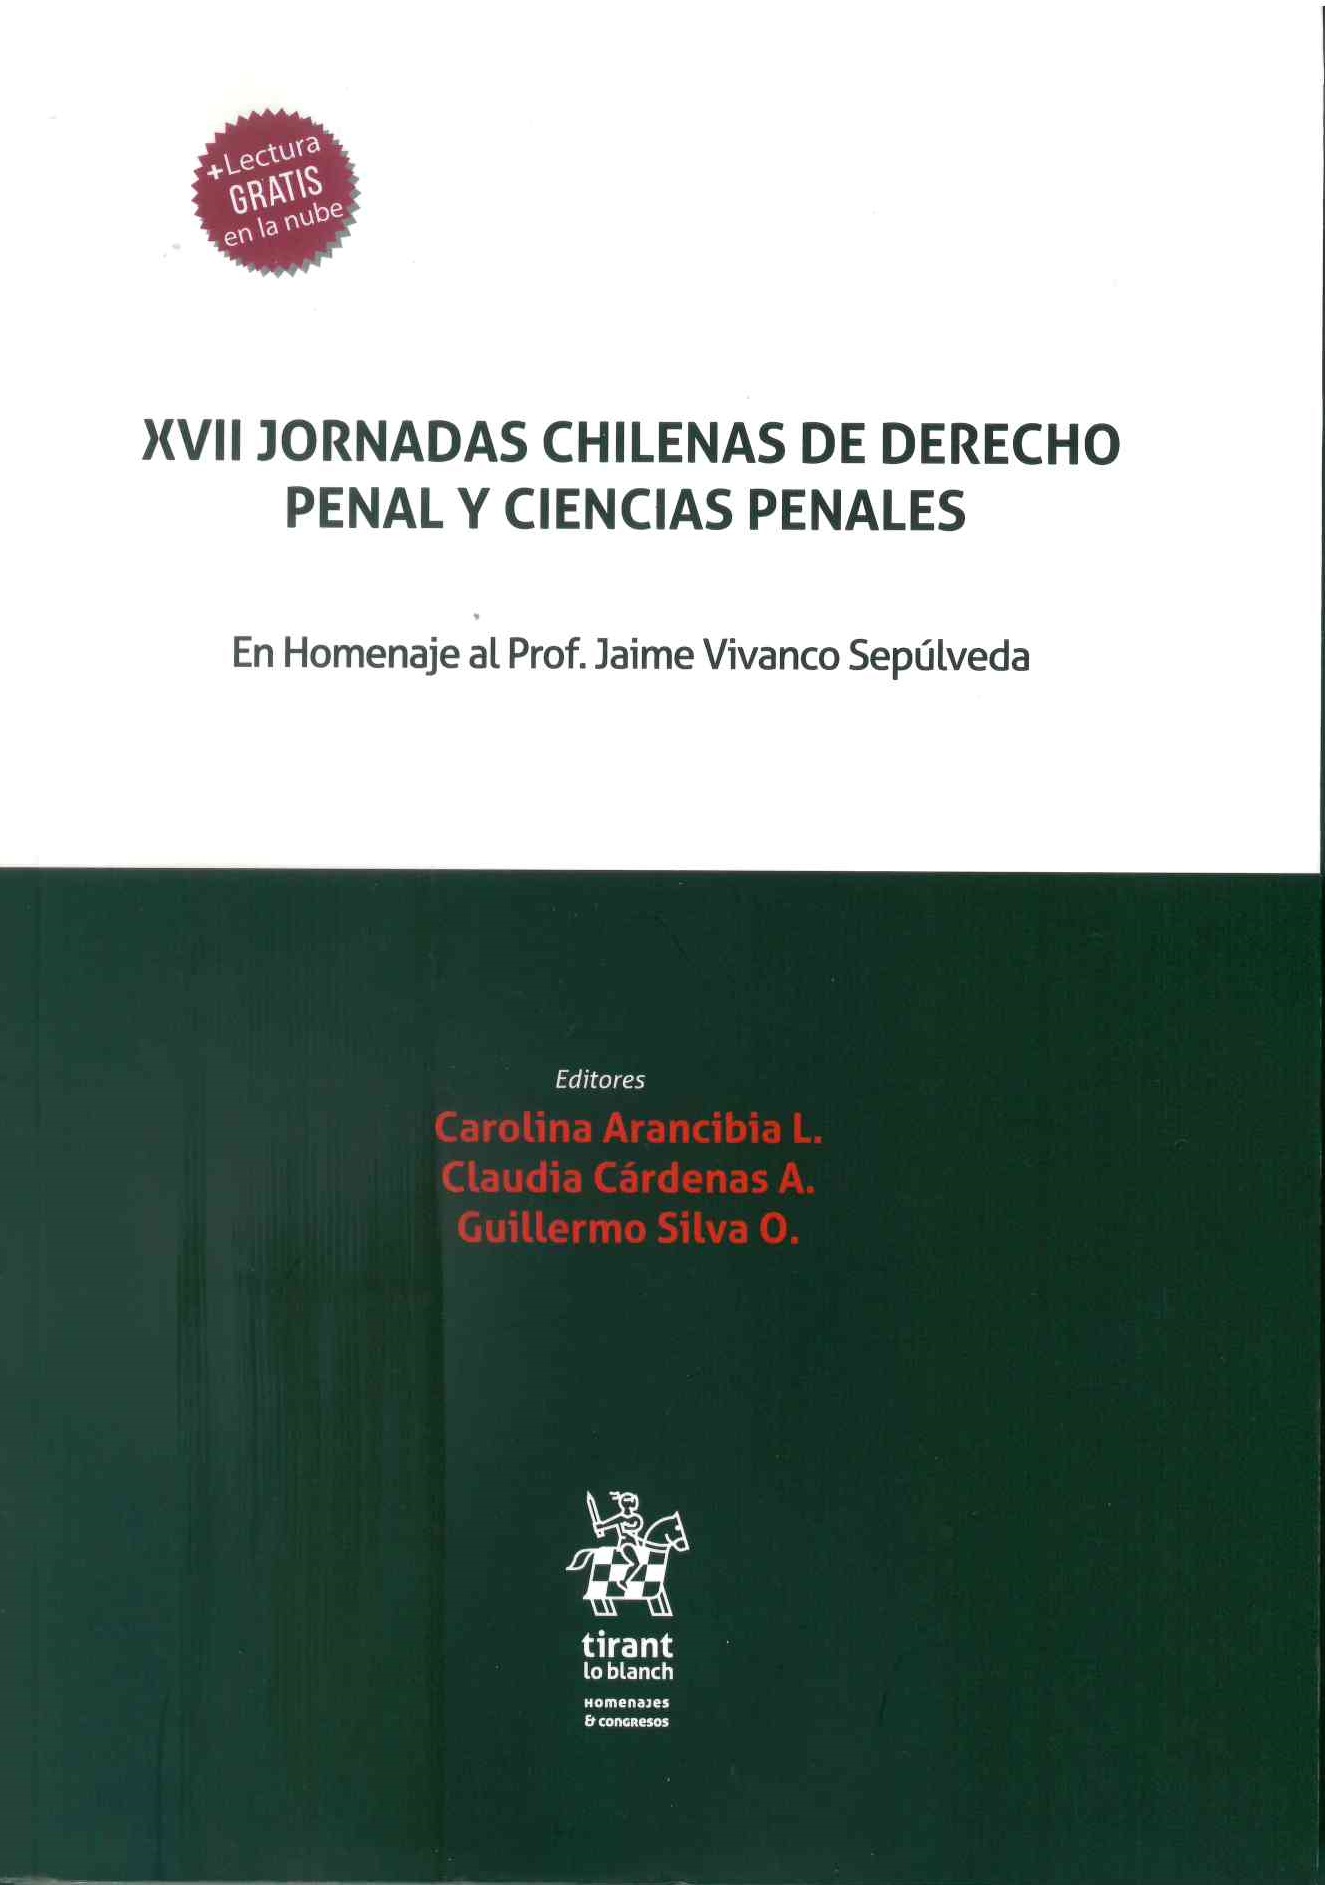 XVII Jornadas Chilenas de Derecho penal y ciencias penales. 